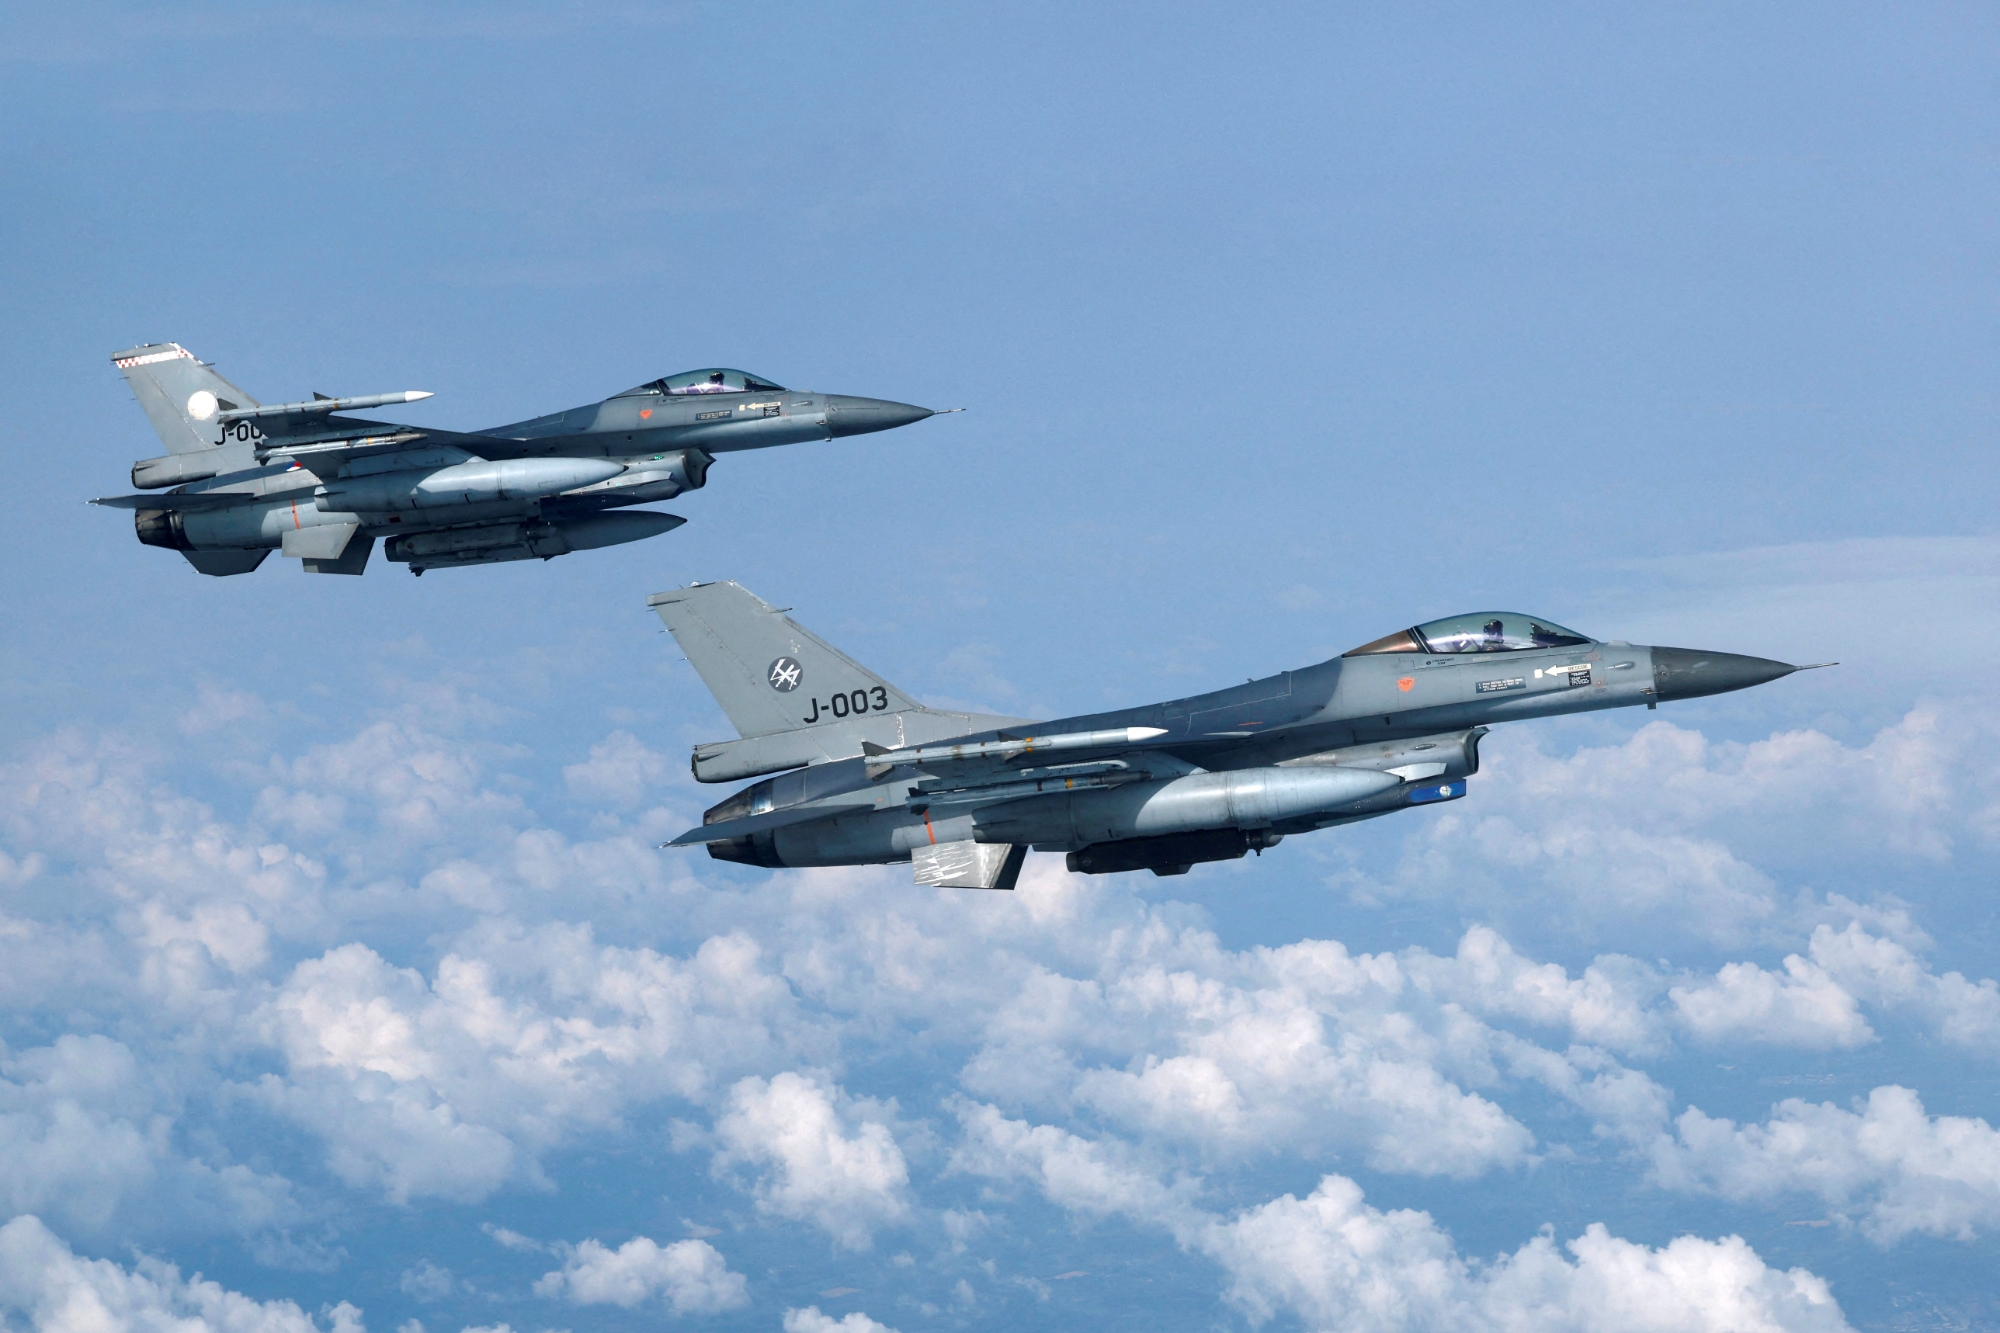 Nederland planlegger å overføre F-16 Fighting Falcon-jagerfly til Ukraina i høst